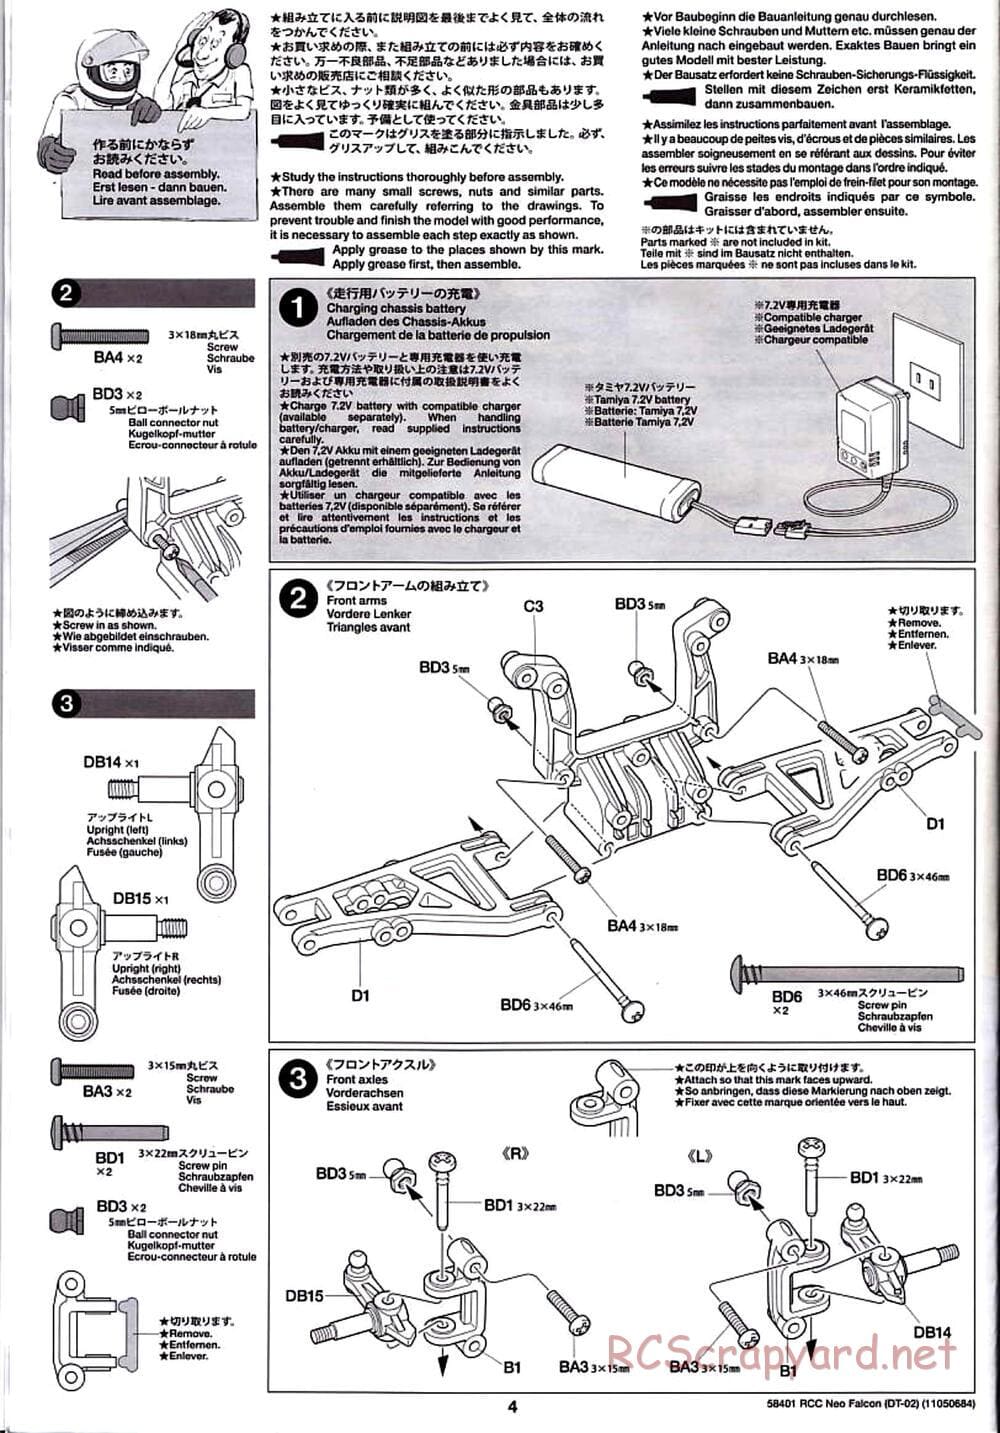 Tamiya - Neo Falcon Chassis - Manual - Page 4